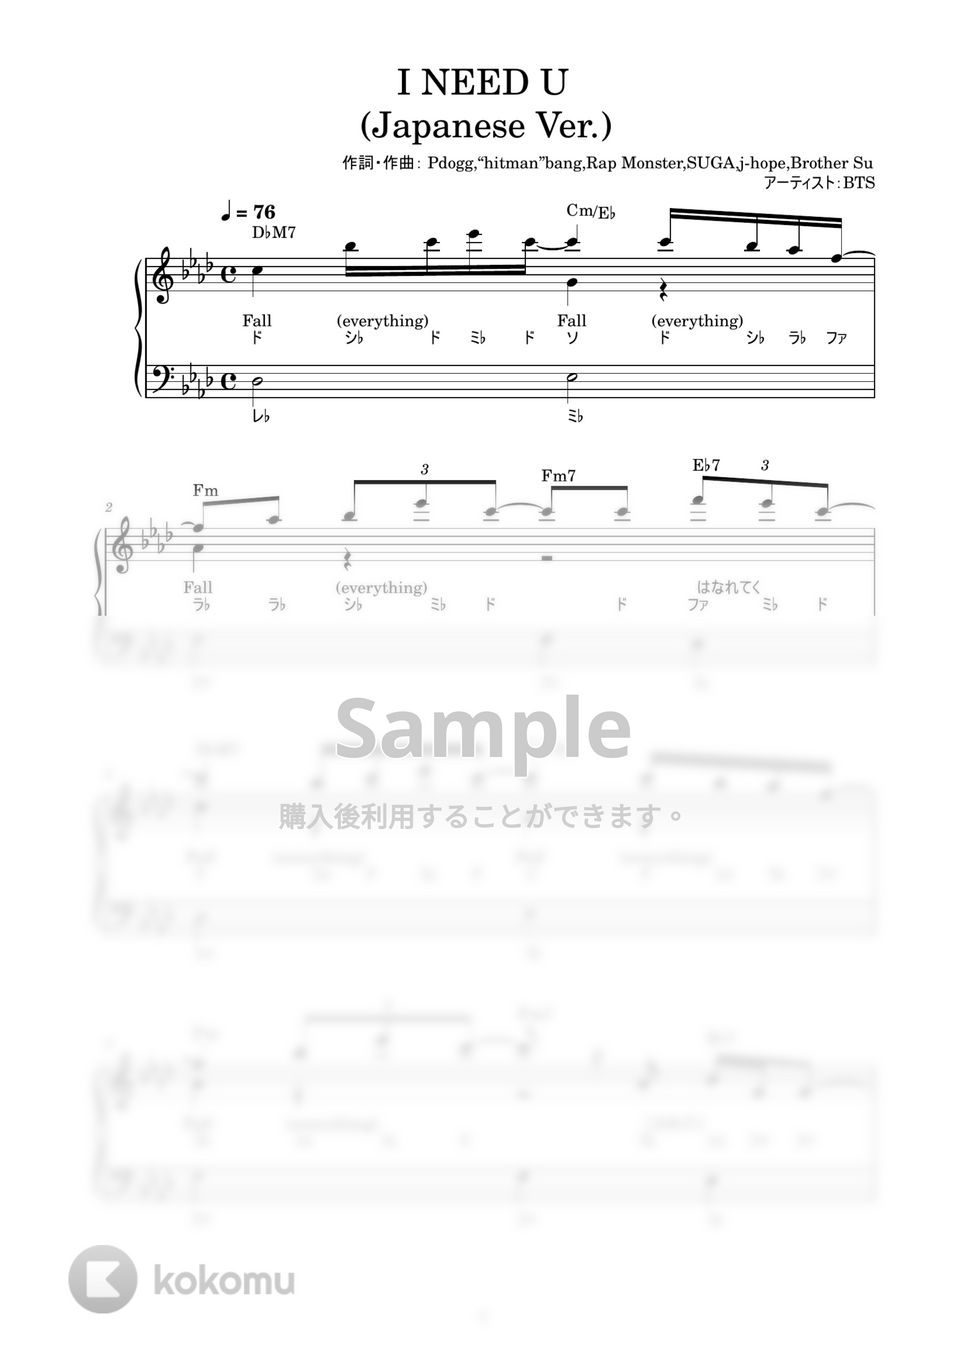 防弾少年団(BTS) - I NEED U (Japanese Ver.) (かんたん / 歌詞付き / ドレミ付き / 初心者) by piano.tokyo